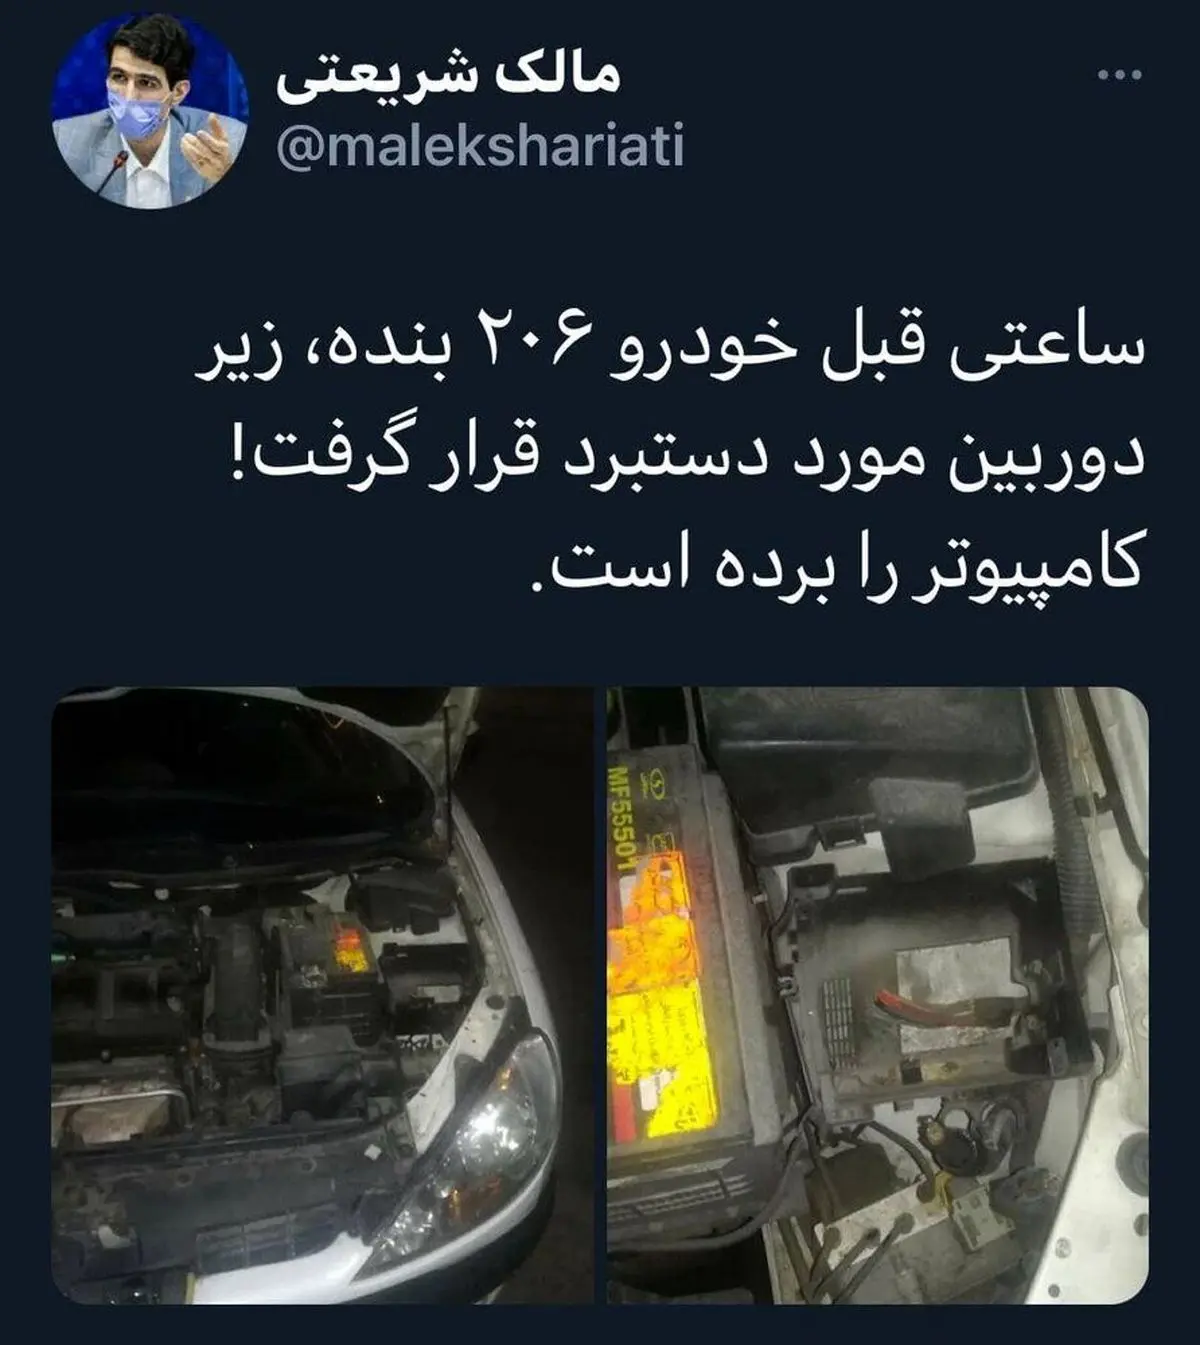 ماشین یک نماینده مجلس به سرقت رفت!+ عکس